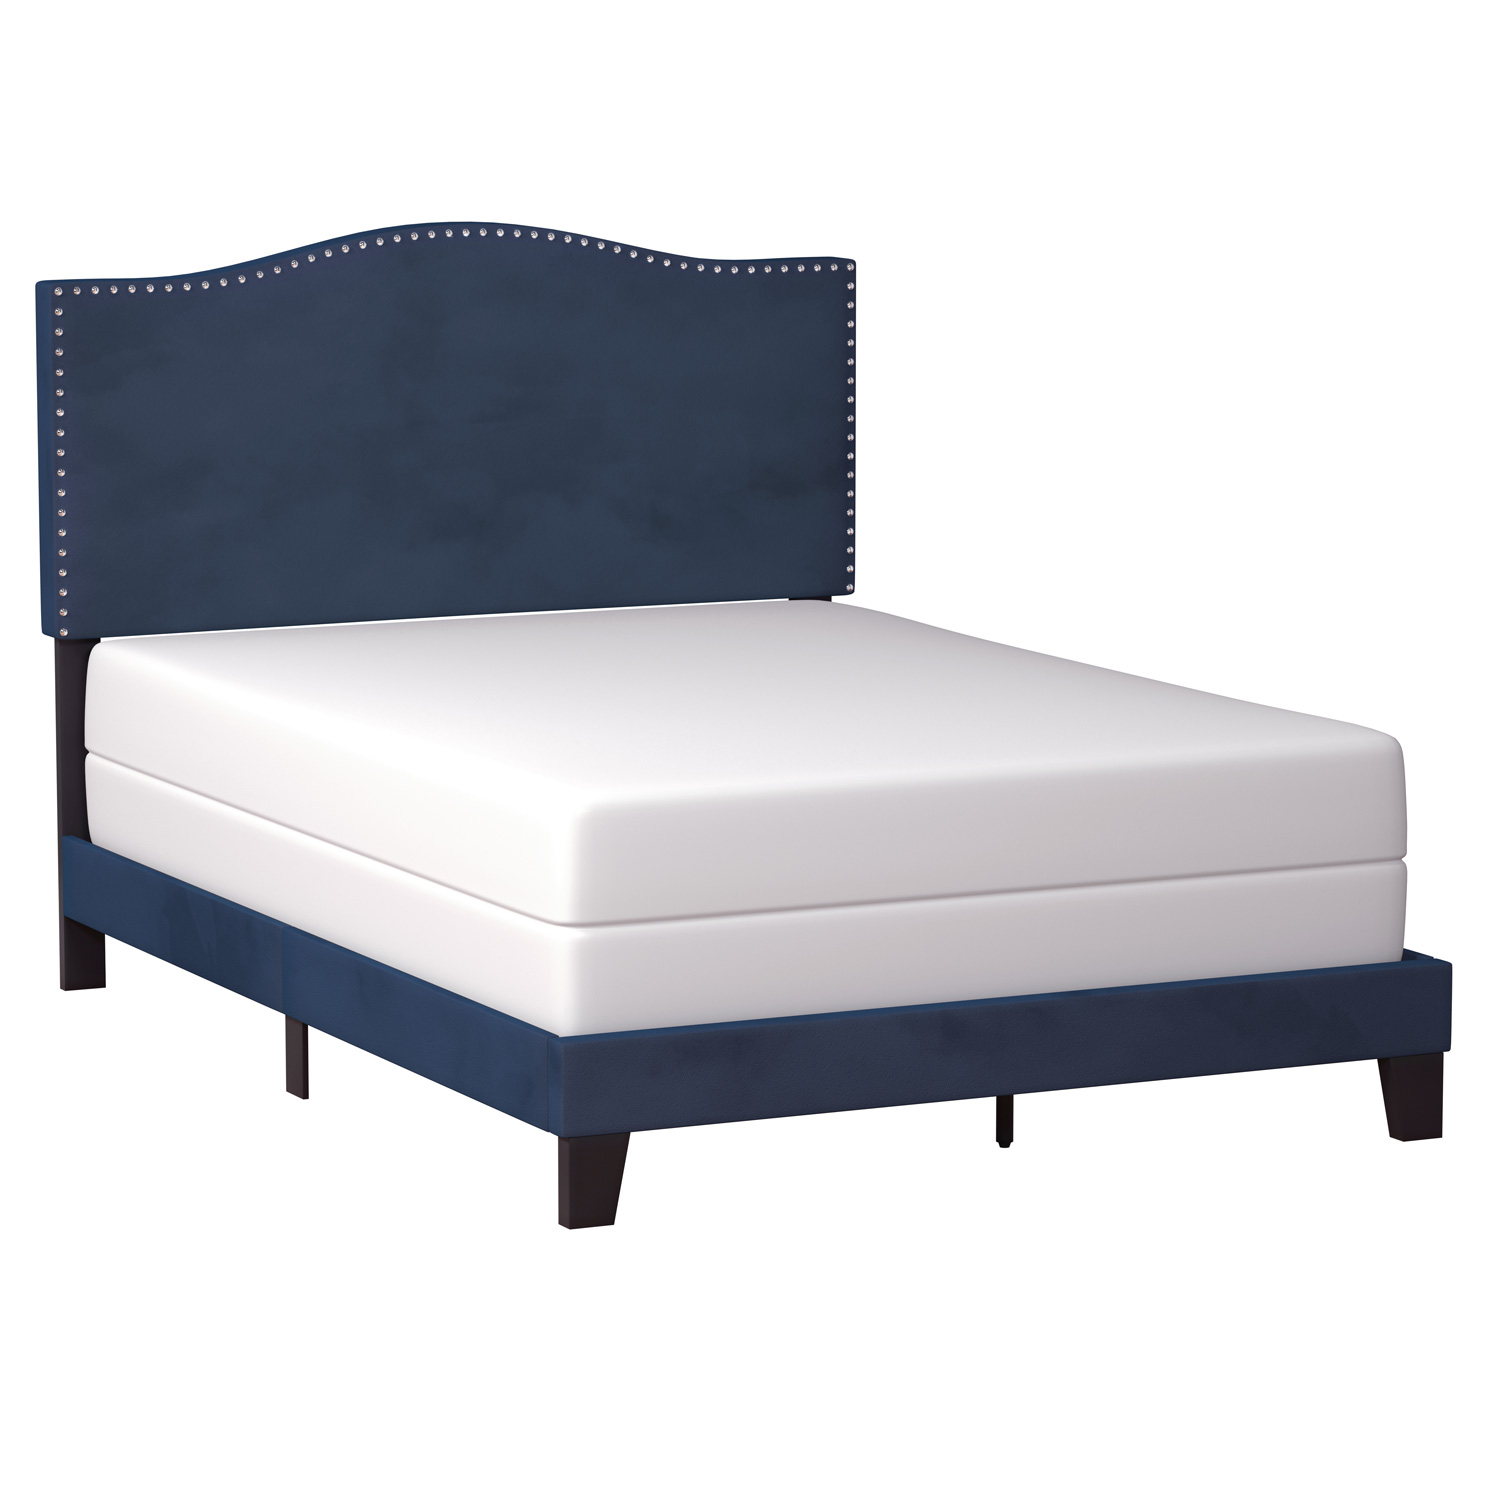 Hillsdale Kiley Upholstered Bed - Blue Velvet